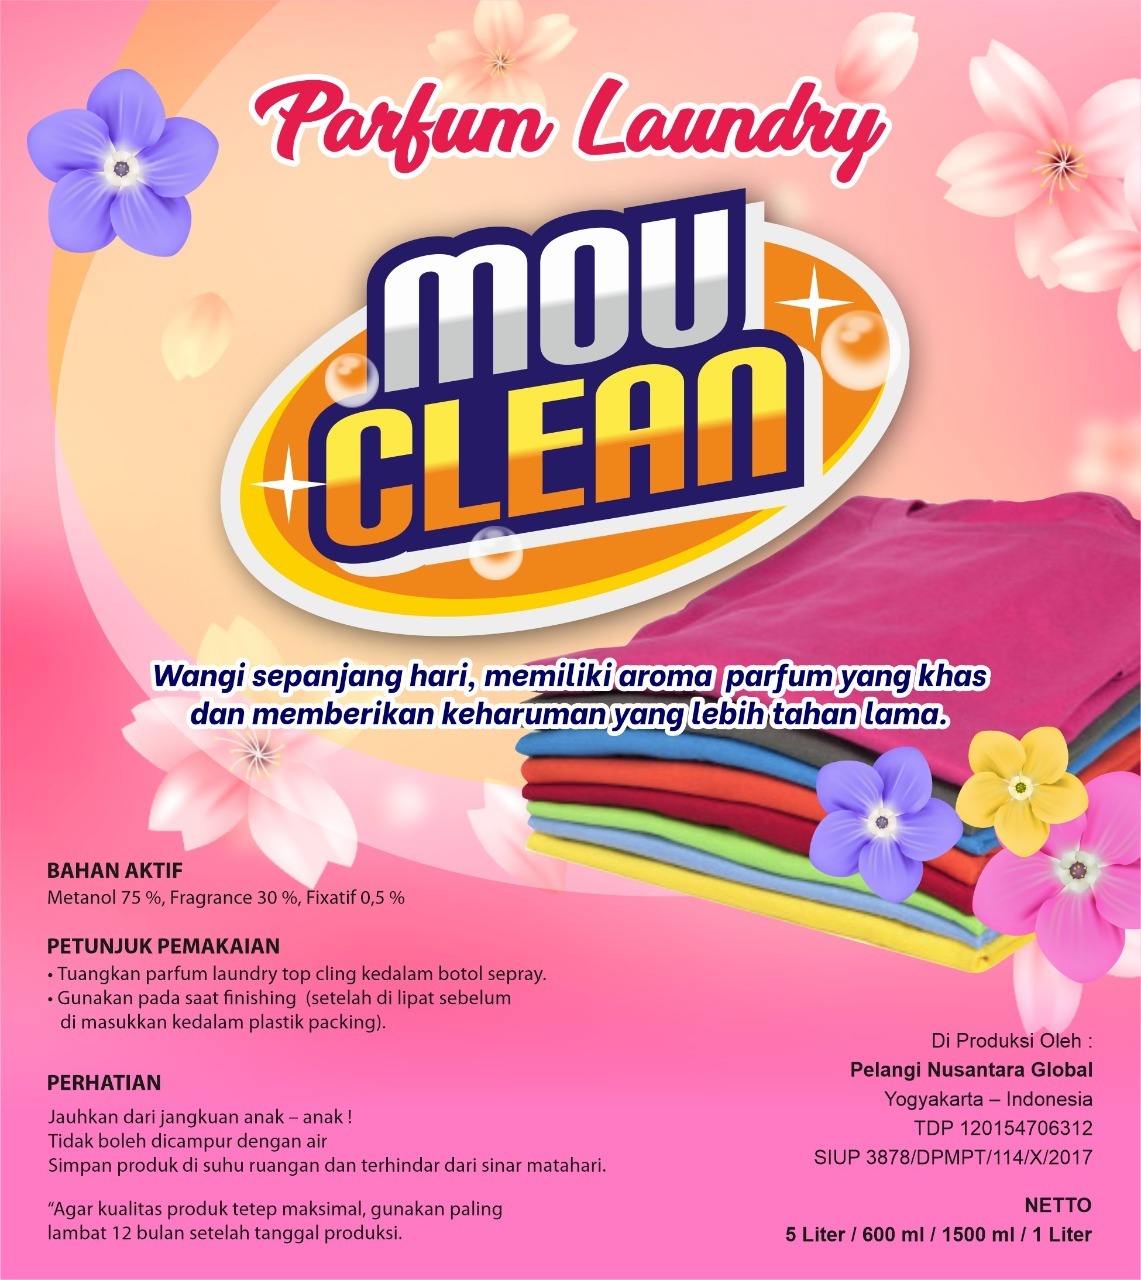 Penyedia  Parfum Laundry Berkualitas  Di Tangerang